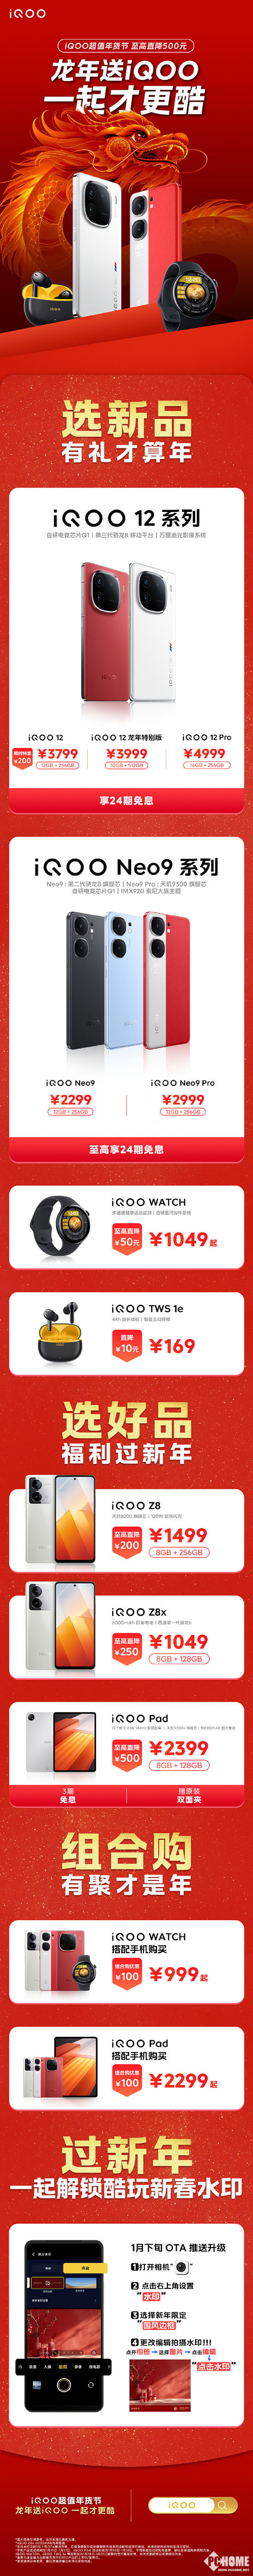 iQOO超值年货节最高降500 新品降价才是真超值